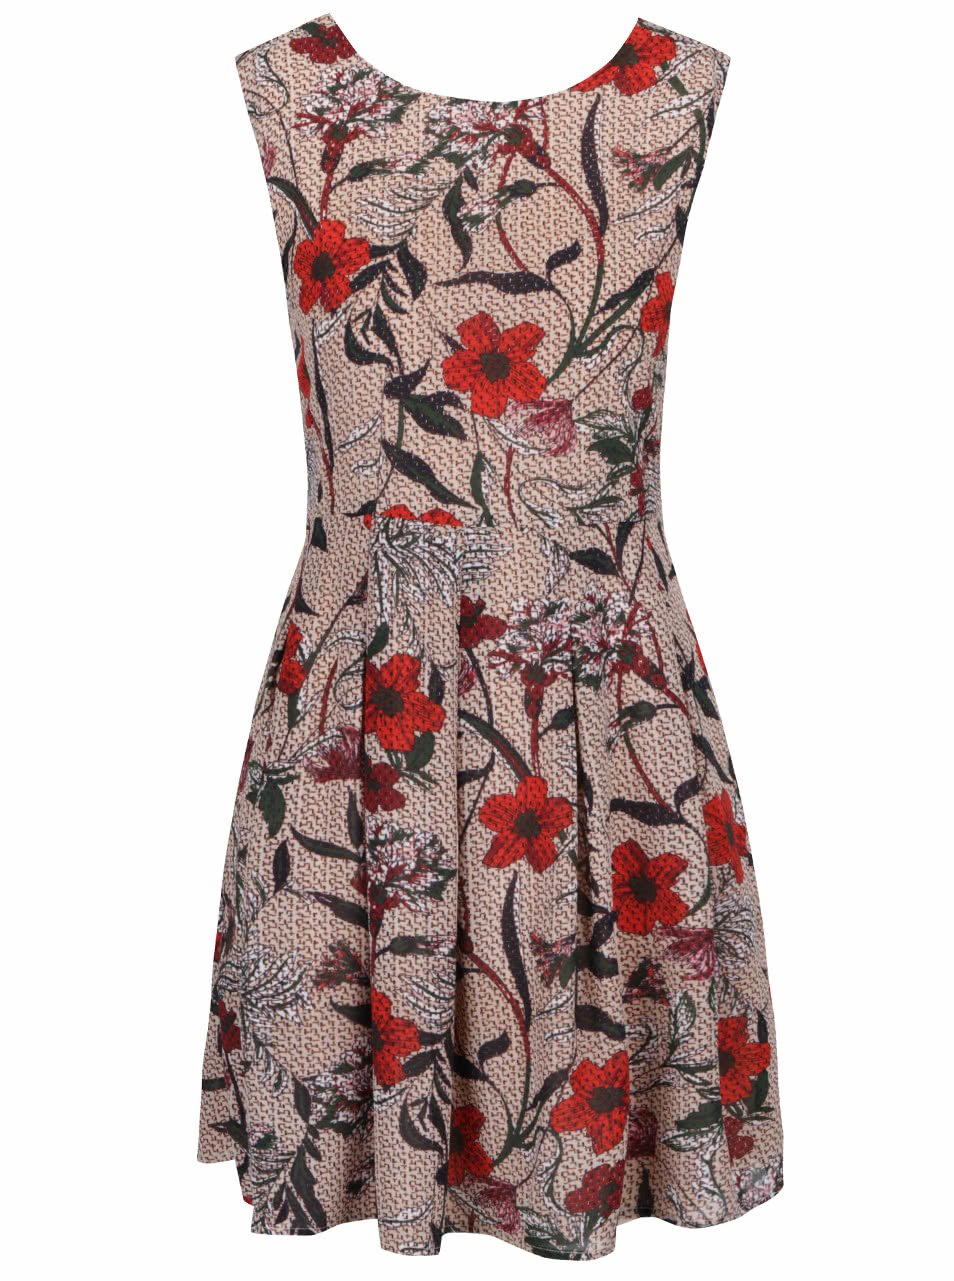 Béžové šaty s motivem květin Mela London